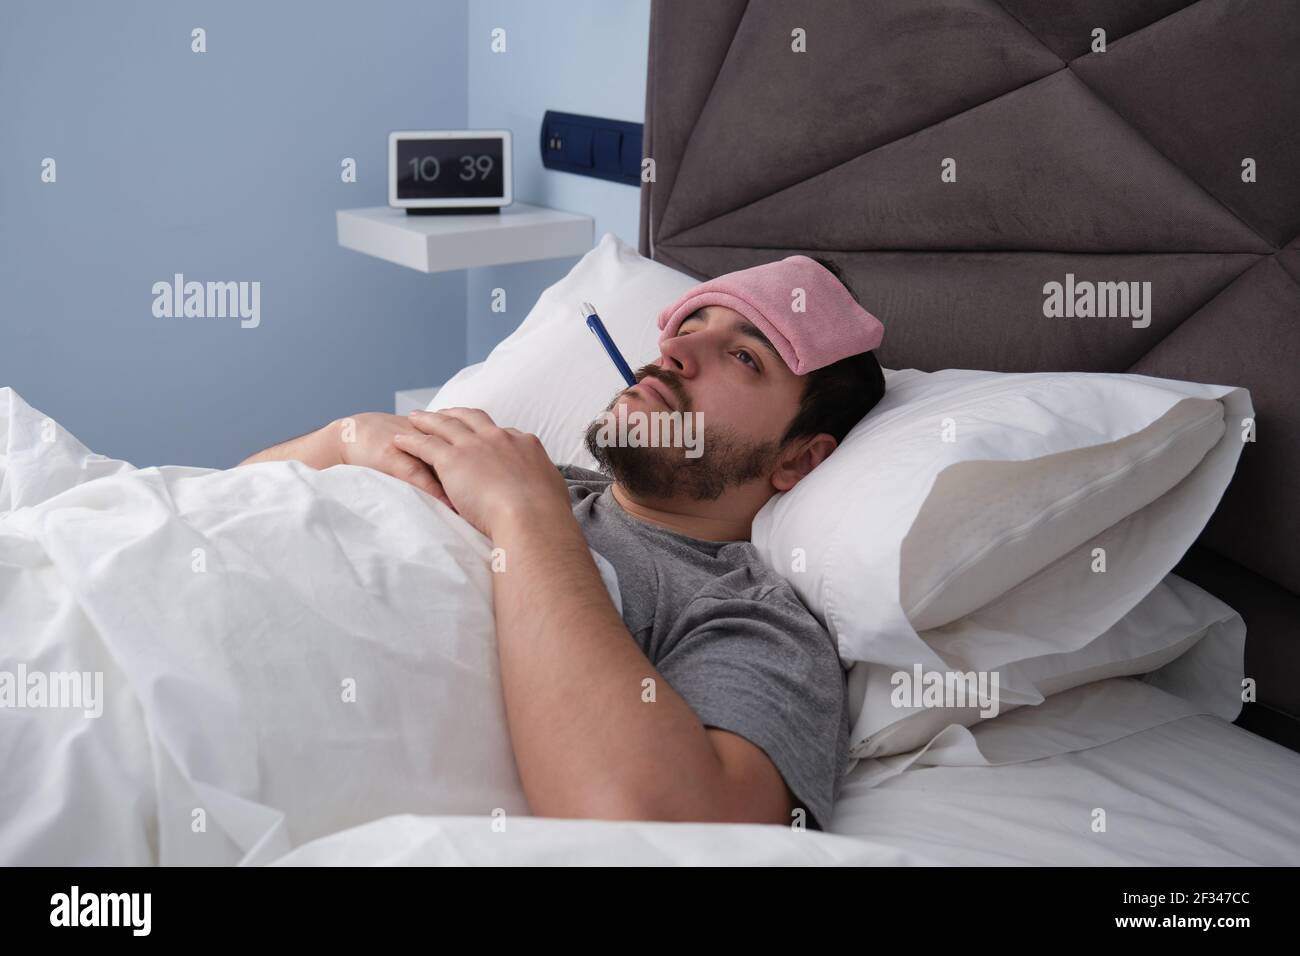 Junger latein krank im Bett mit einem Thermometer im Mund und einem Tuch auf dem Kopf. Digitale Uhr im Hintergrund. Stockfoto